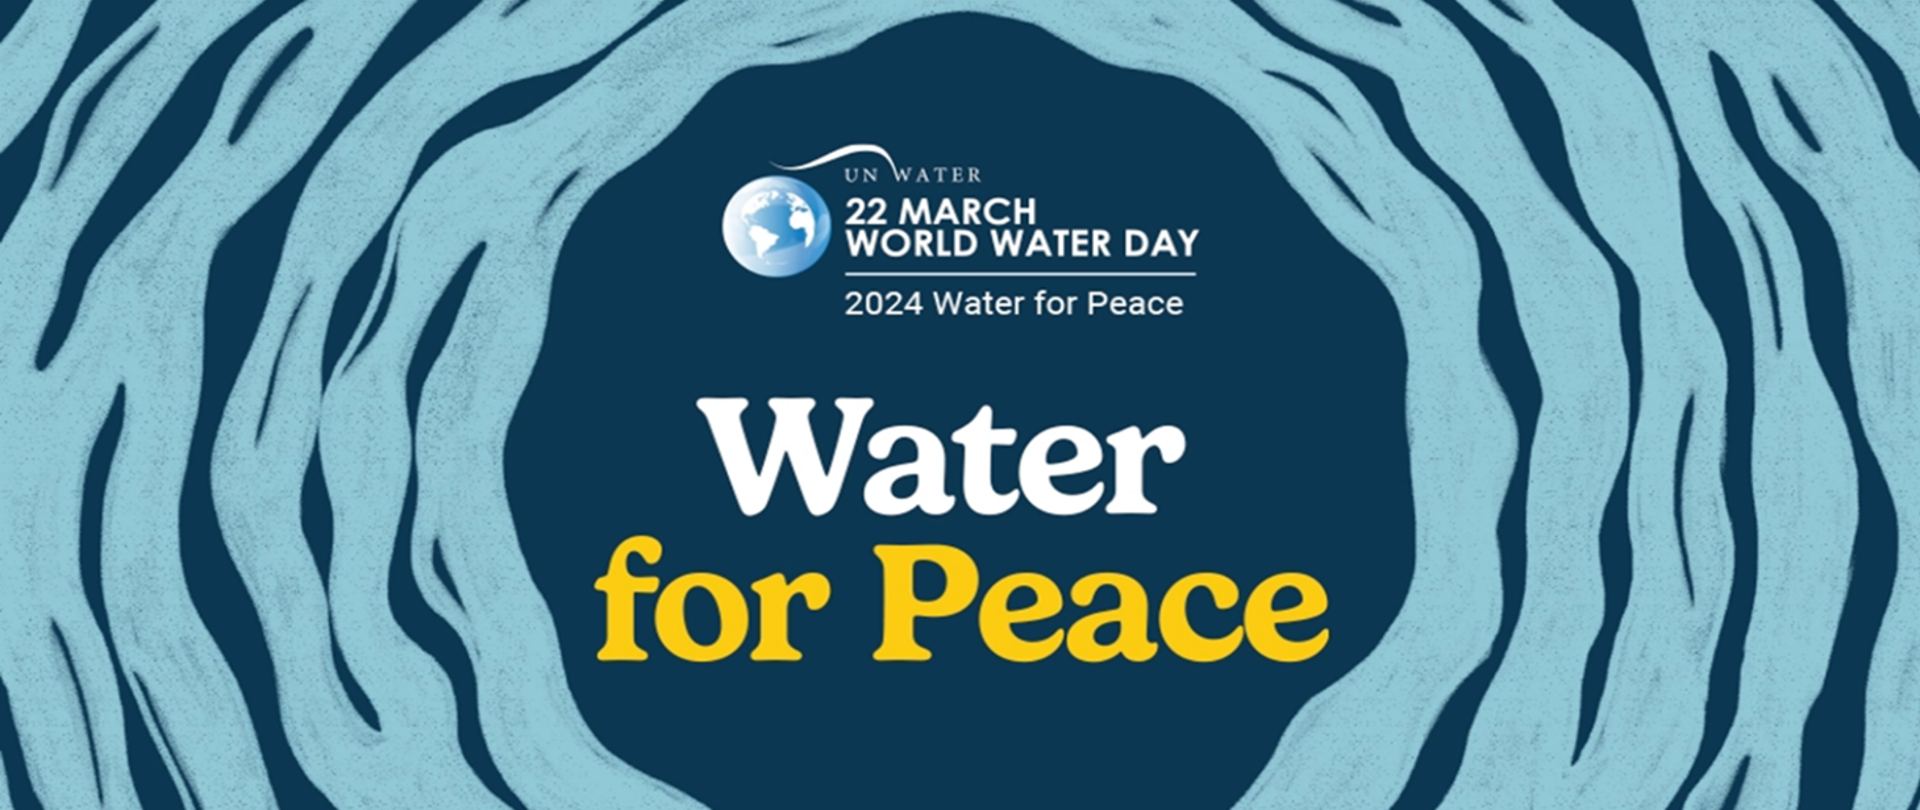 Na niebieskim i granatowym tle znajduje się na środku grafika przedstawiająca ziemię i obok napis Un water 22 march world water day 2024 Water for Peace